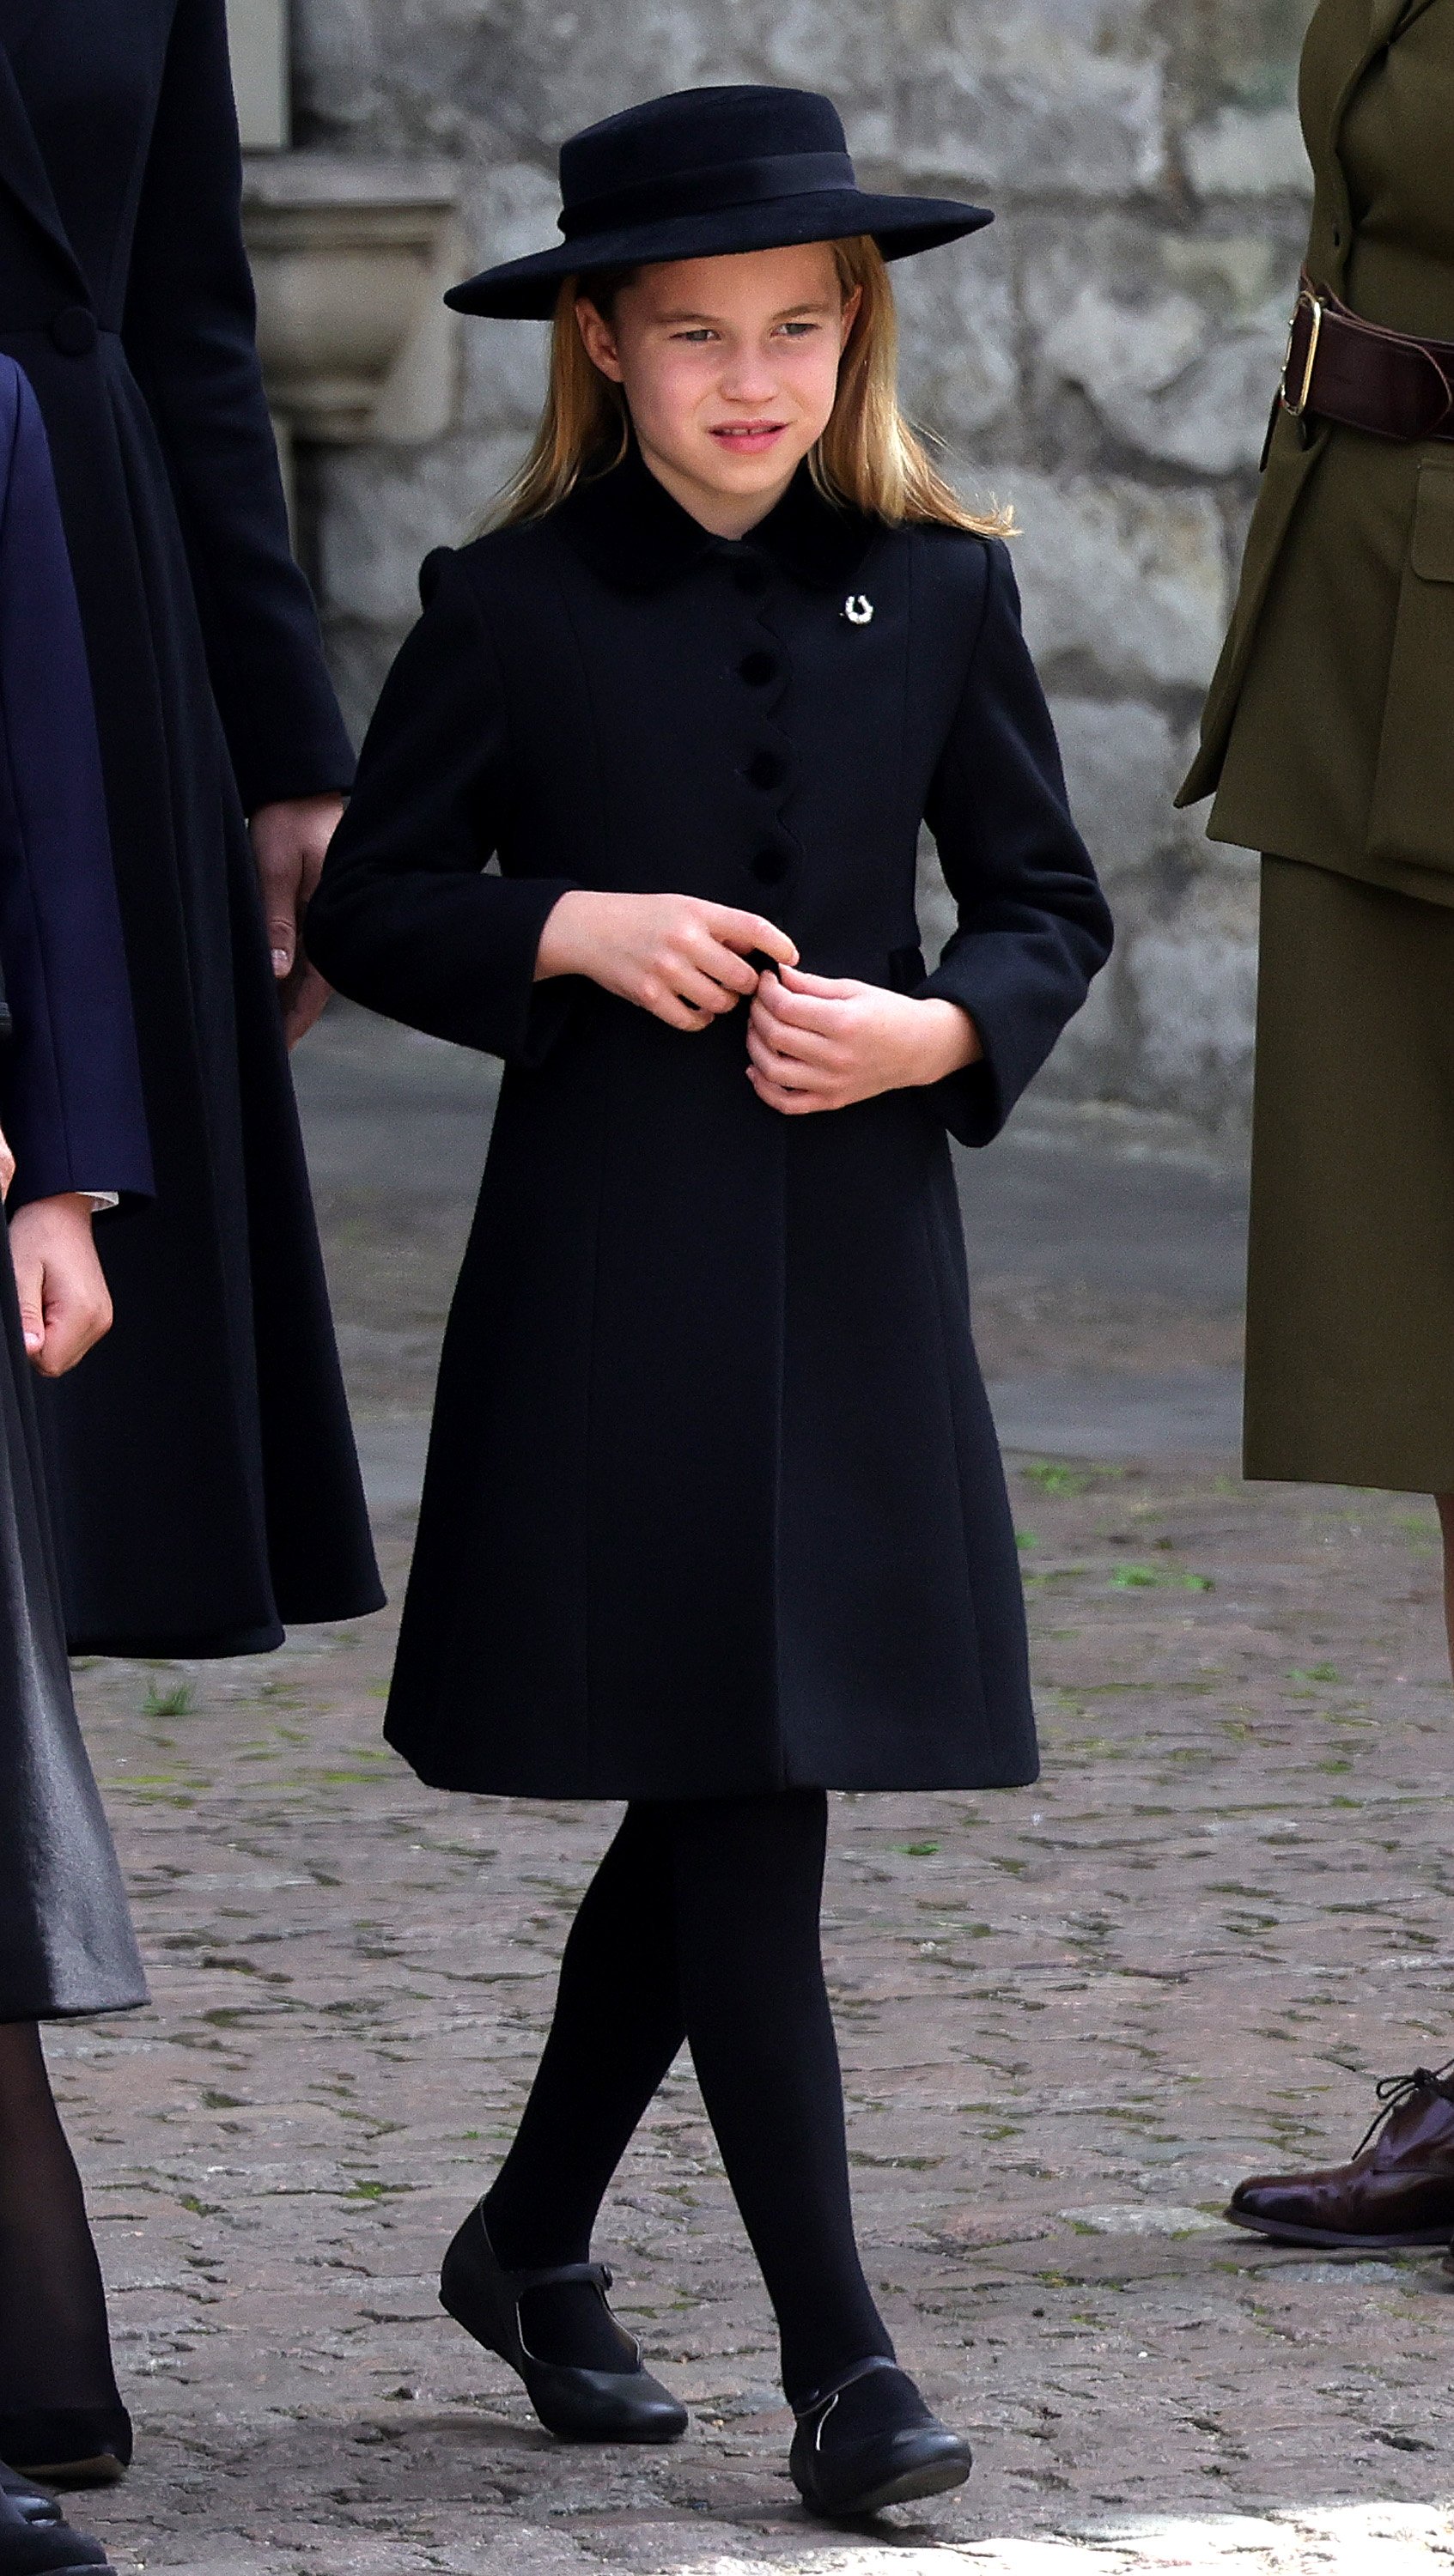 La princesa Charlotte durante el funeral de estado de la reina Elizabeth II en la Abadía de Westminster el 19 de septiembre de 2022 en Londres, Inglaterra | Foto: Getty Images